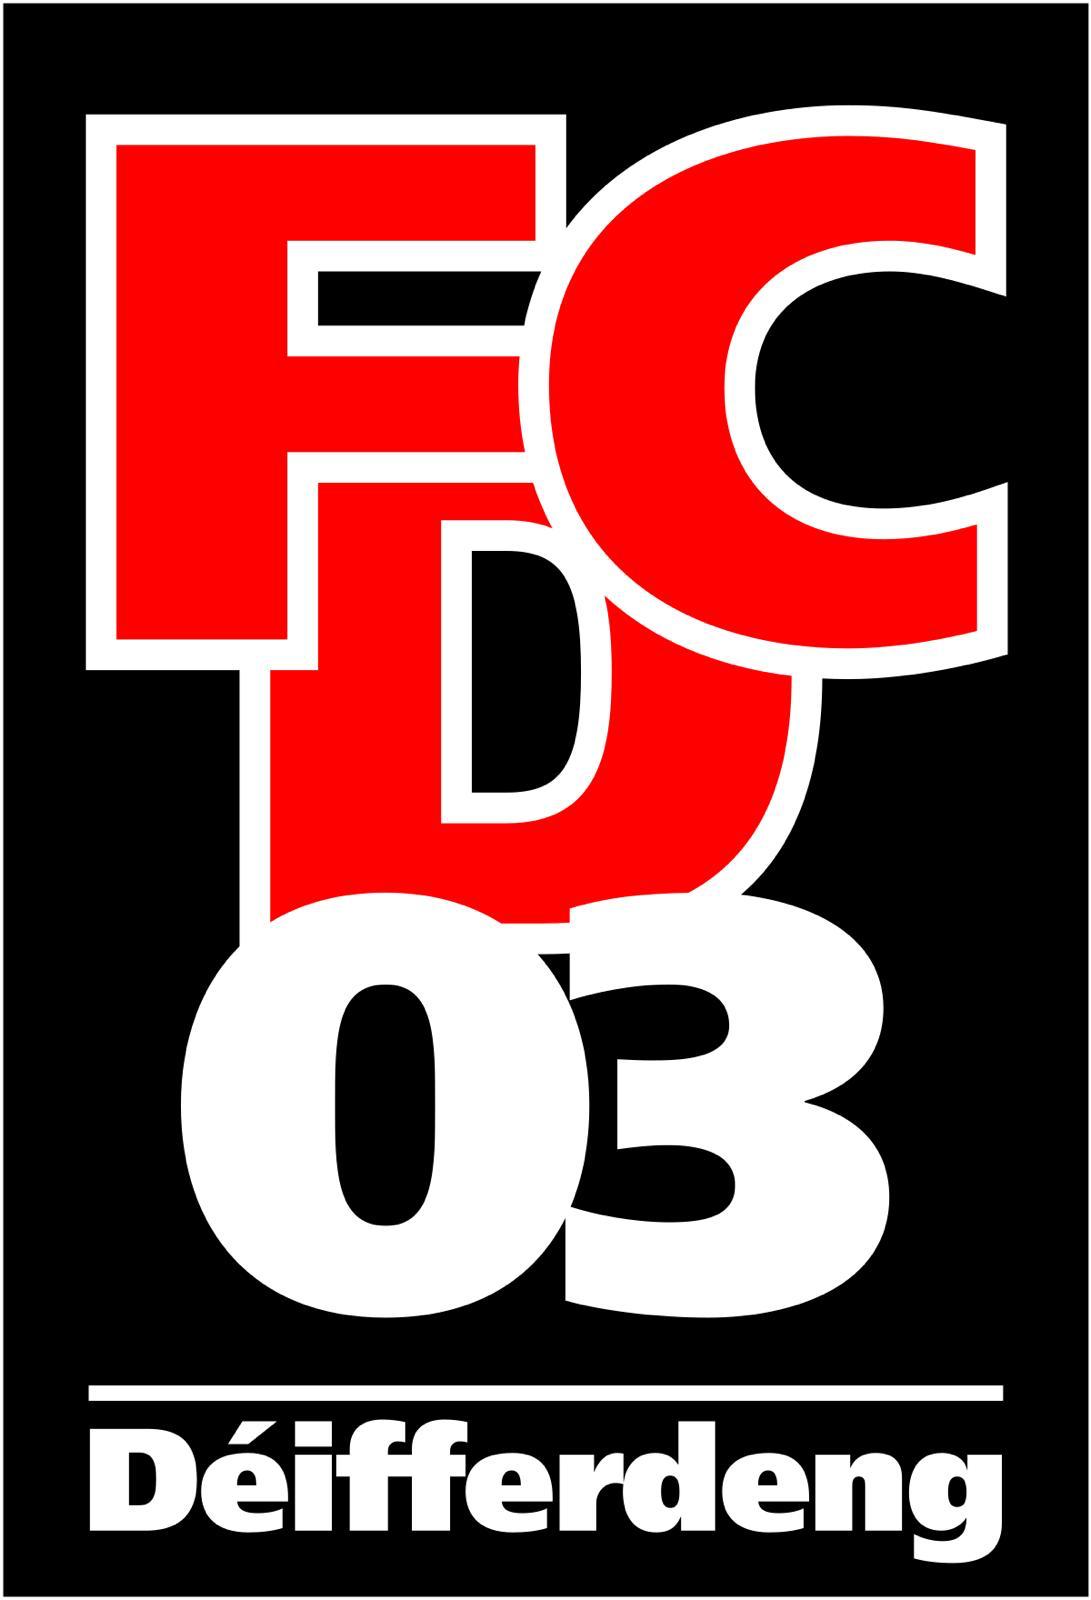 FCD03